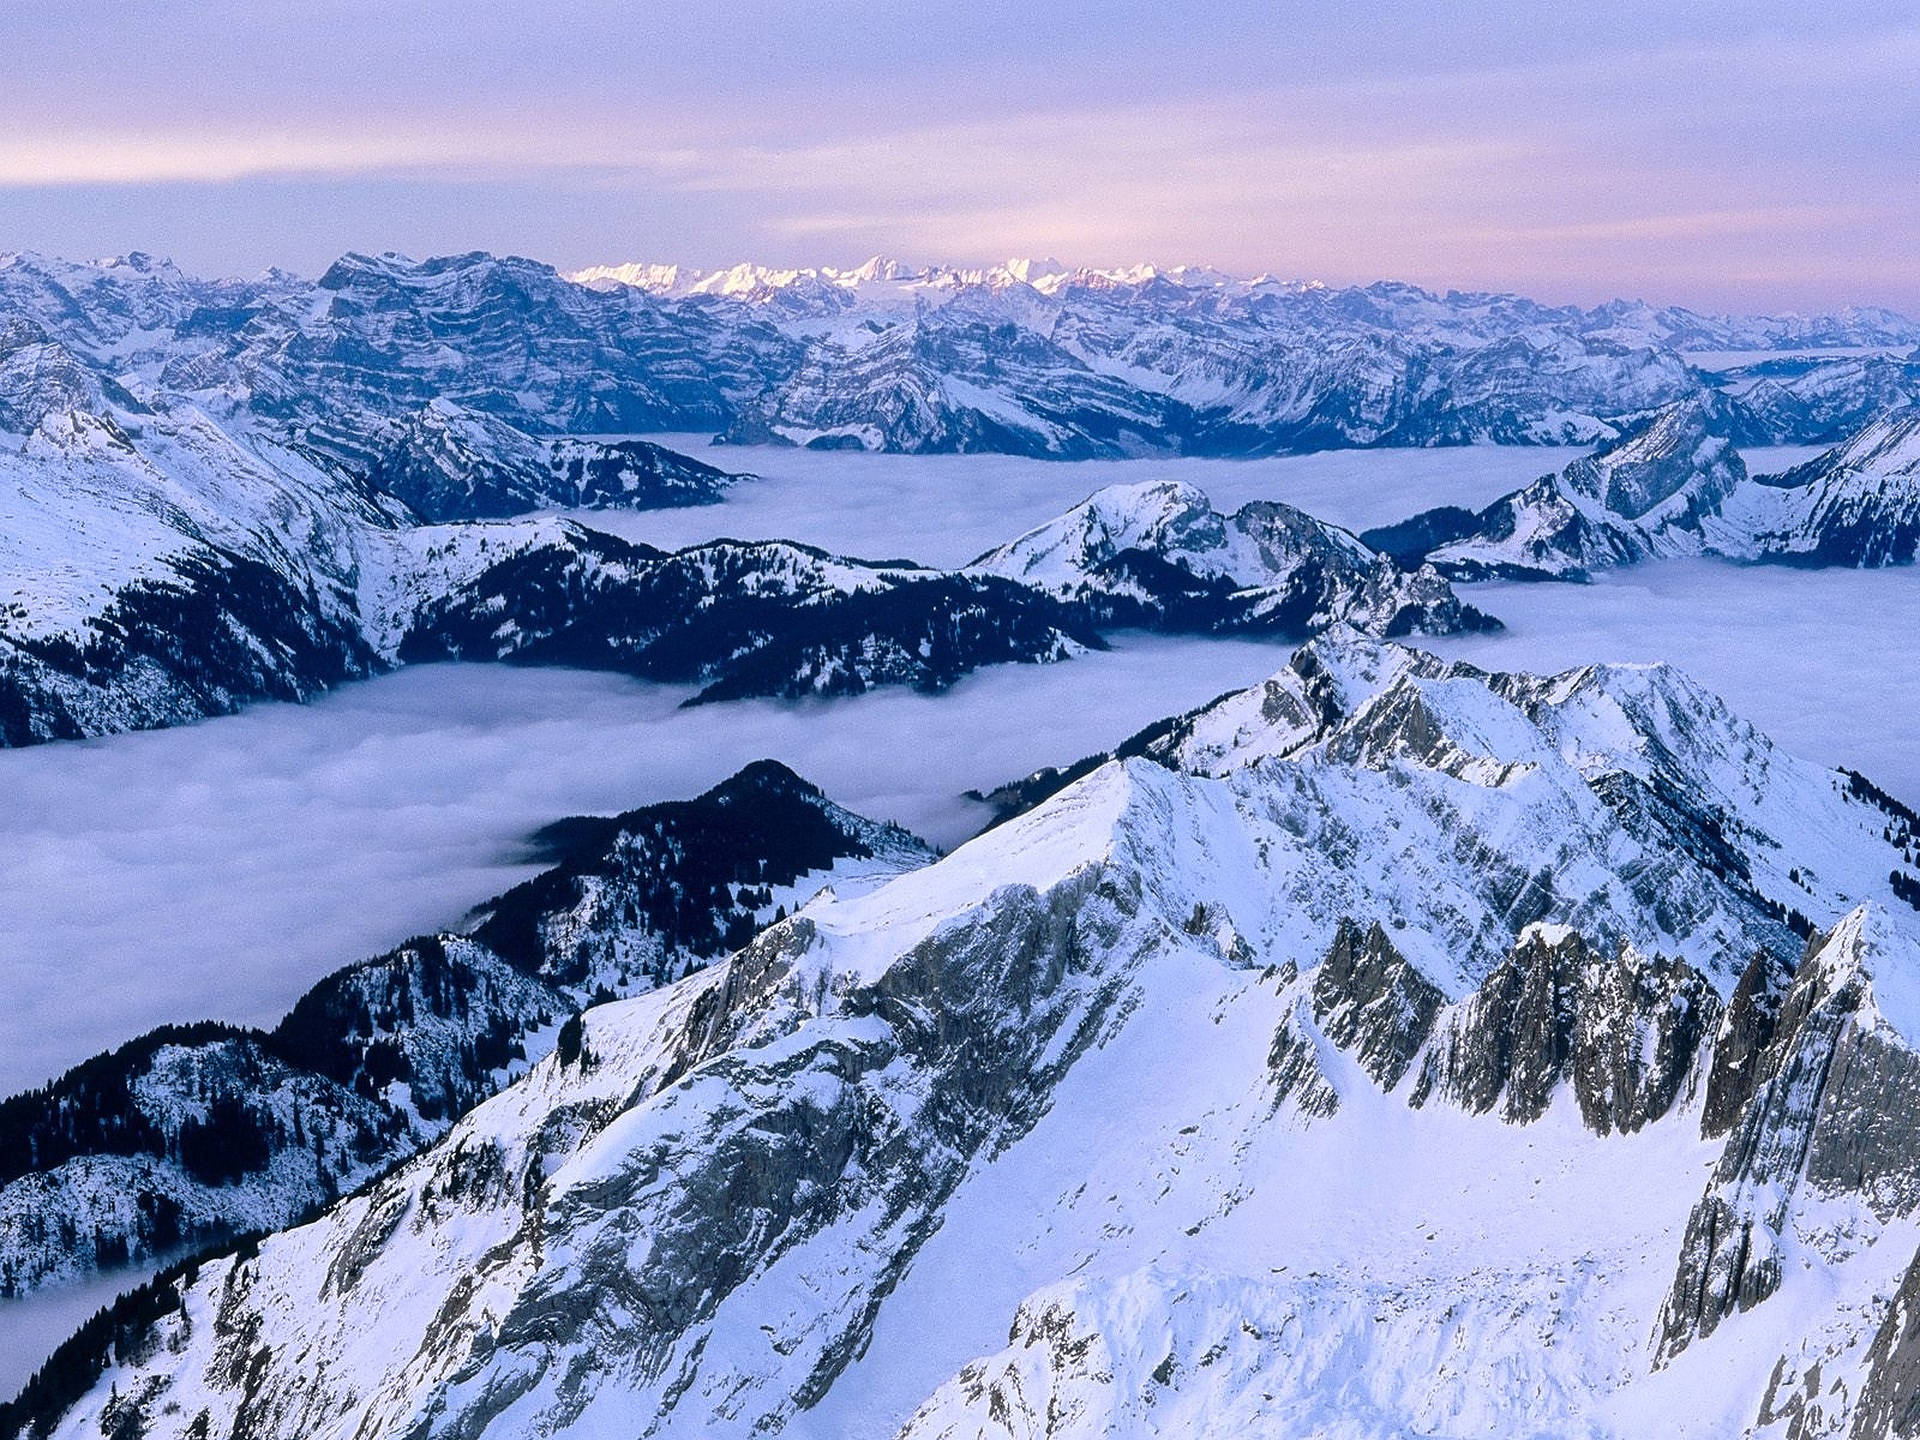 Vistaaérea De Los Alpes Suizos. Fondo de pantalla